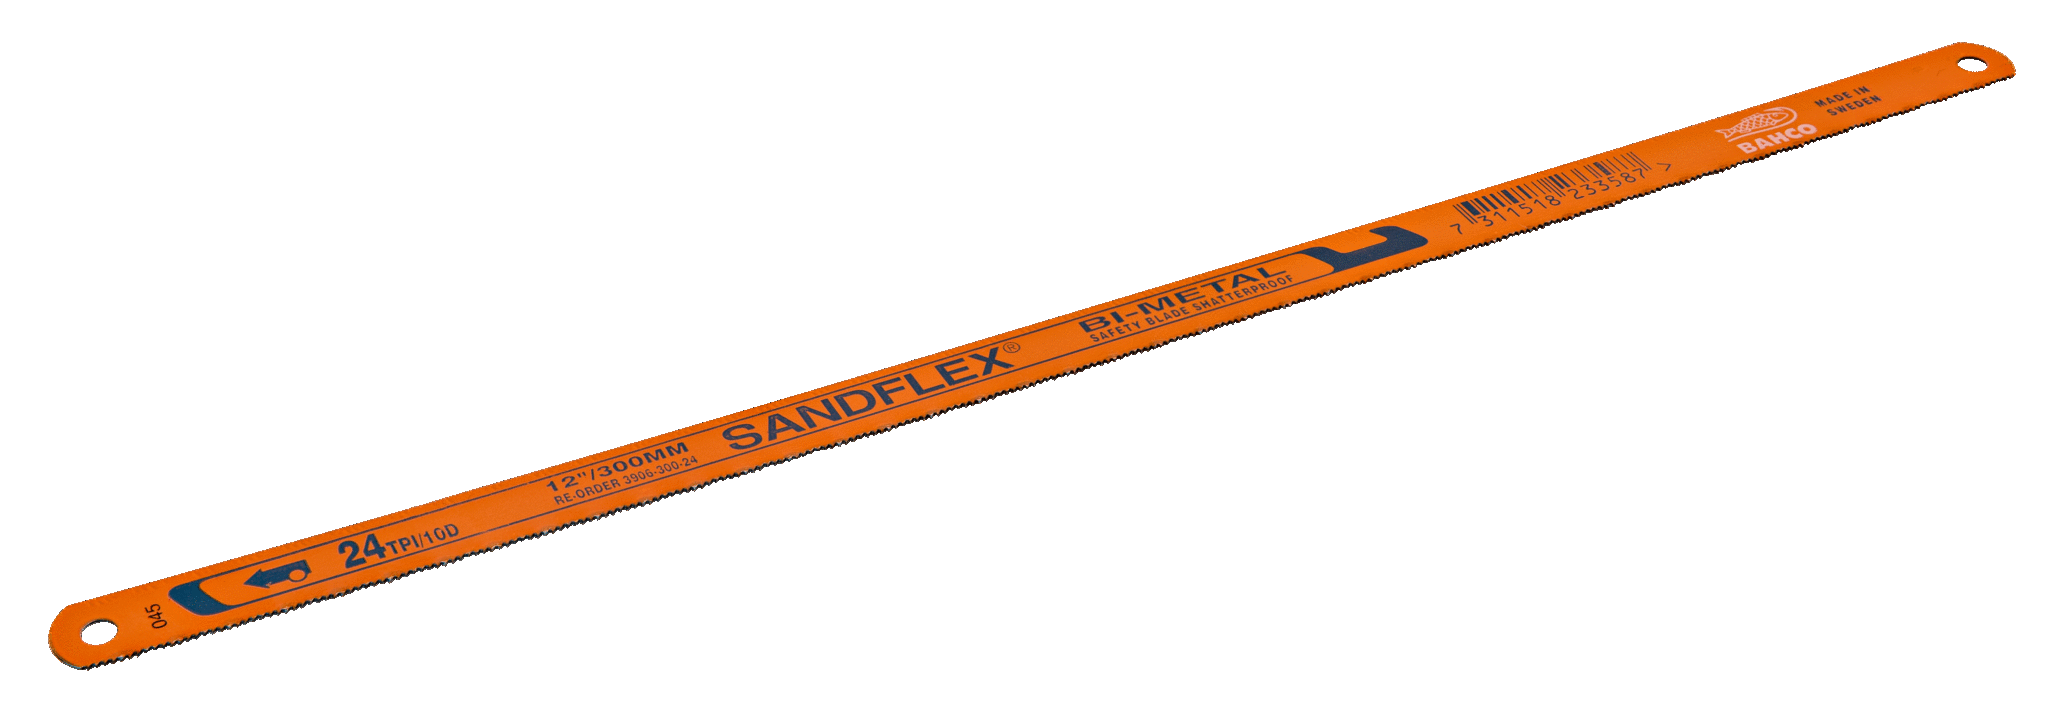 12in Bahco Sandflex Bi-Metal Shatter-Proof Hacksaw Blades 18tpi 300mm